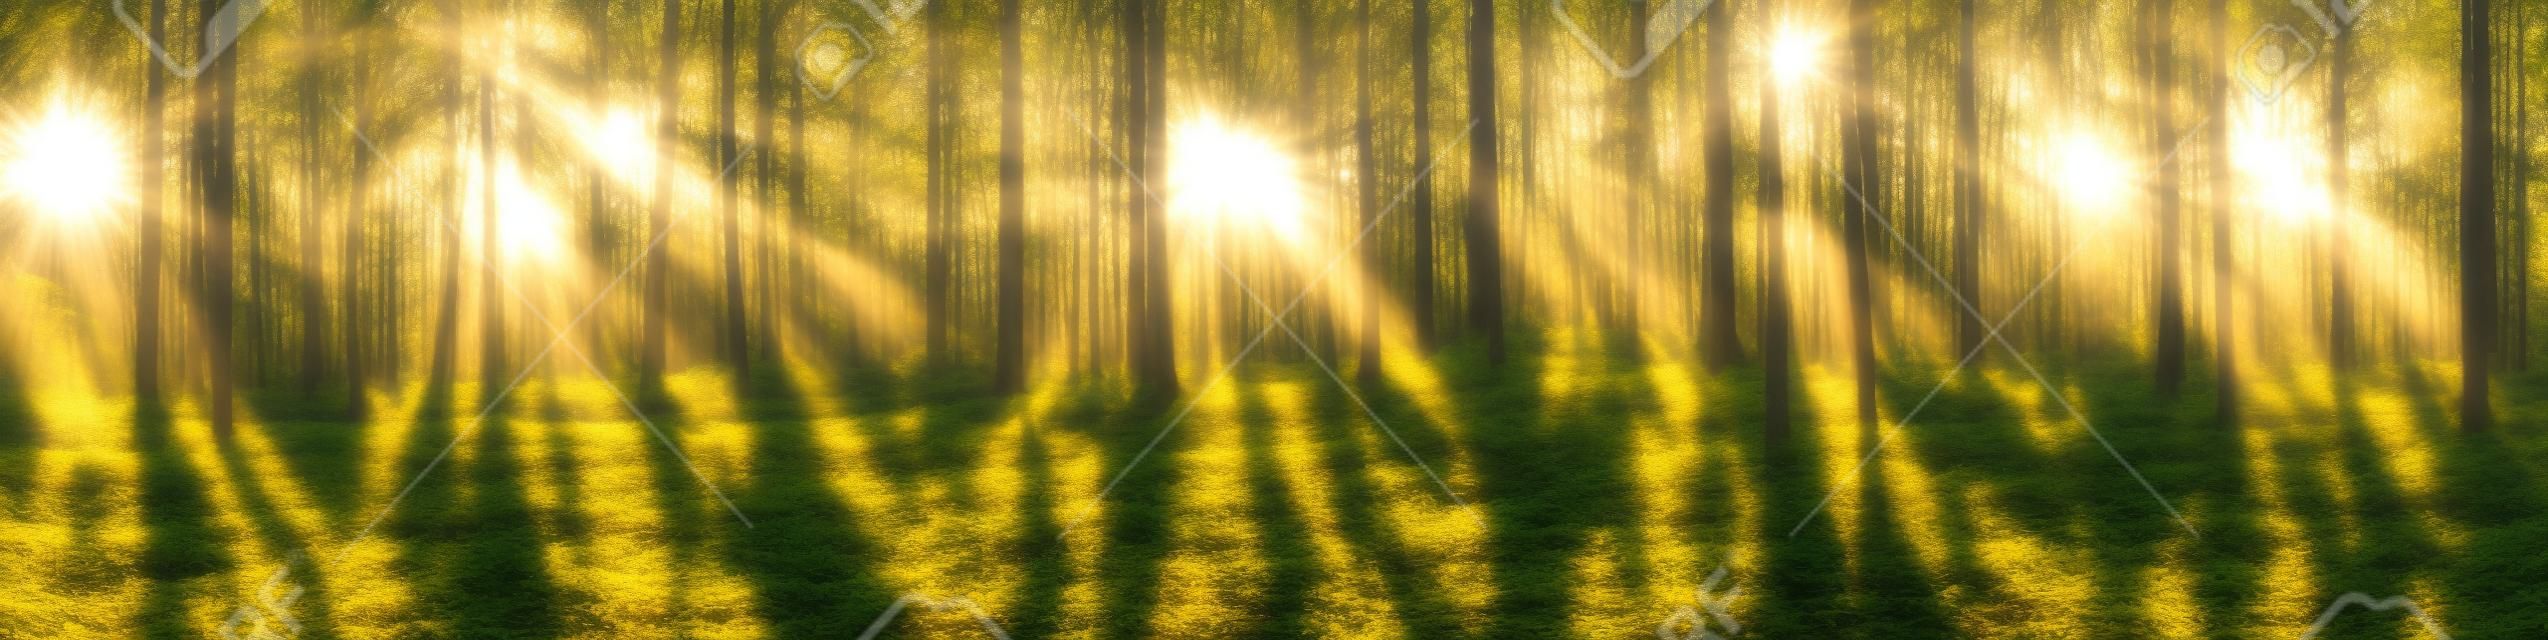 Piękna panorama lasu z jasnym słońcem prześwitującym przez drzewa